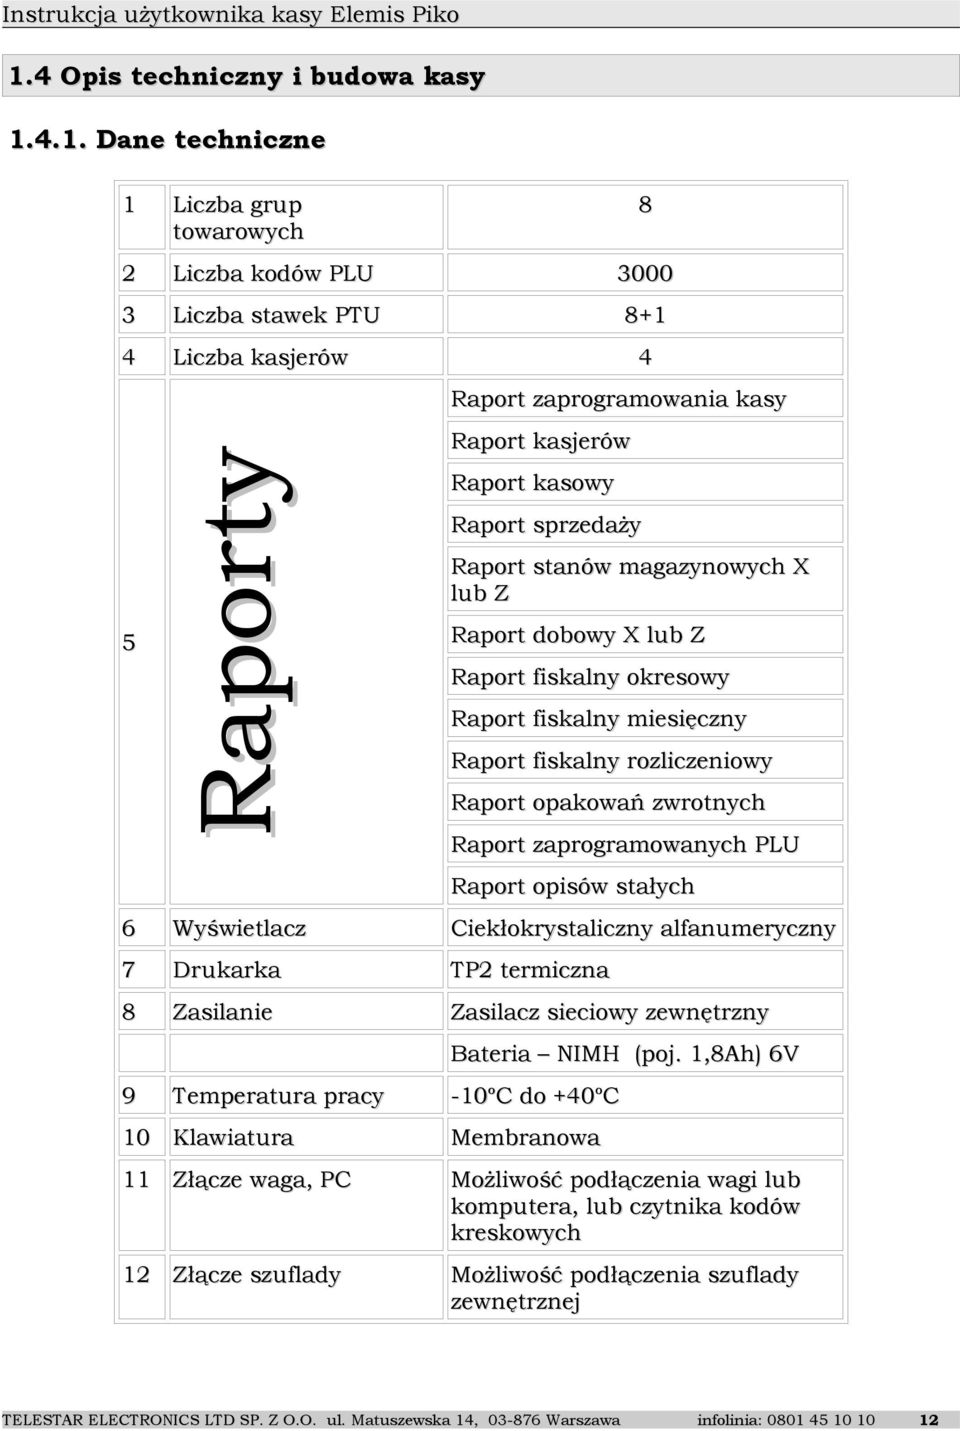 zwrotnych Raport zaprogramowanych PLU Raport opisów stałych 6 Wyświetlacz Ciekłokrystaliczny alfanumeryczny 7 Drukarka TP2 termiczna 8 Zasilanie Zasilacz sieciowy zewnętrzny Bateria NIMH (poj.